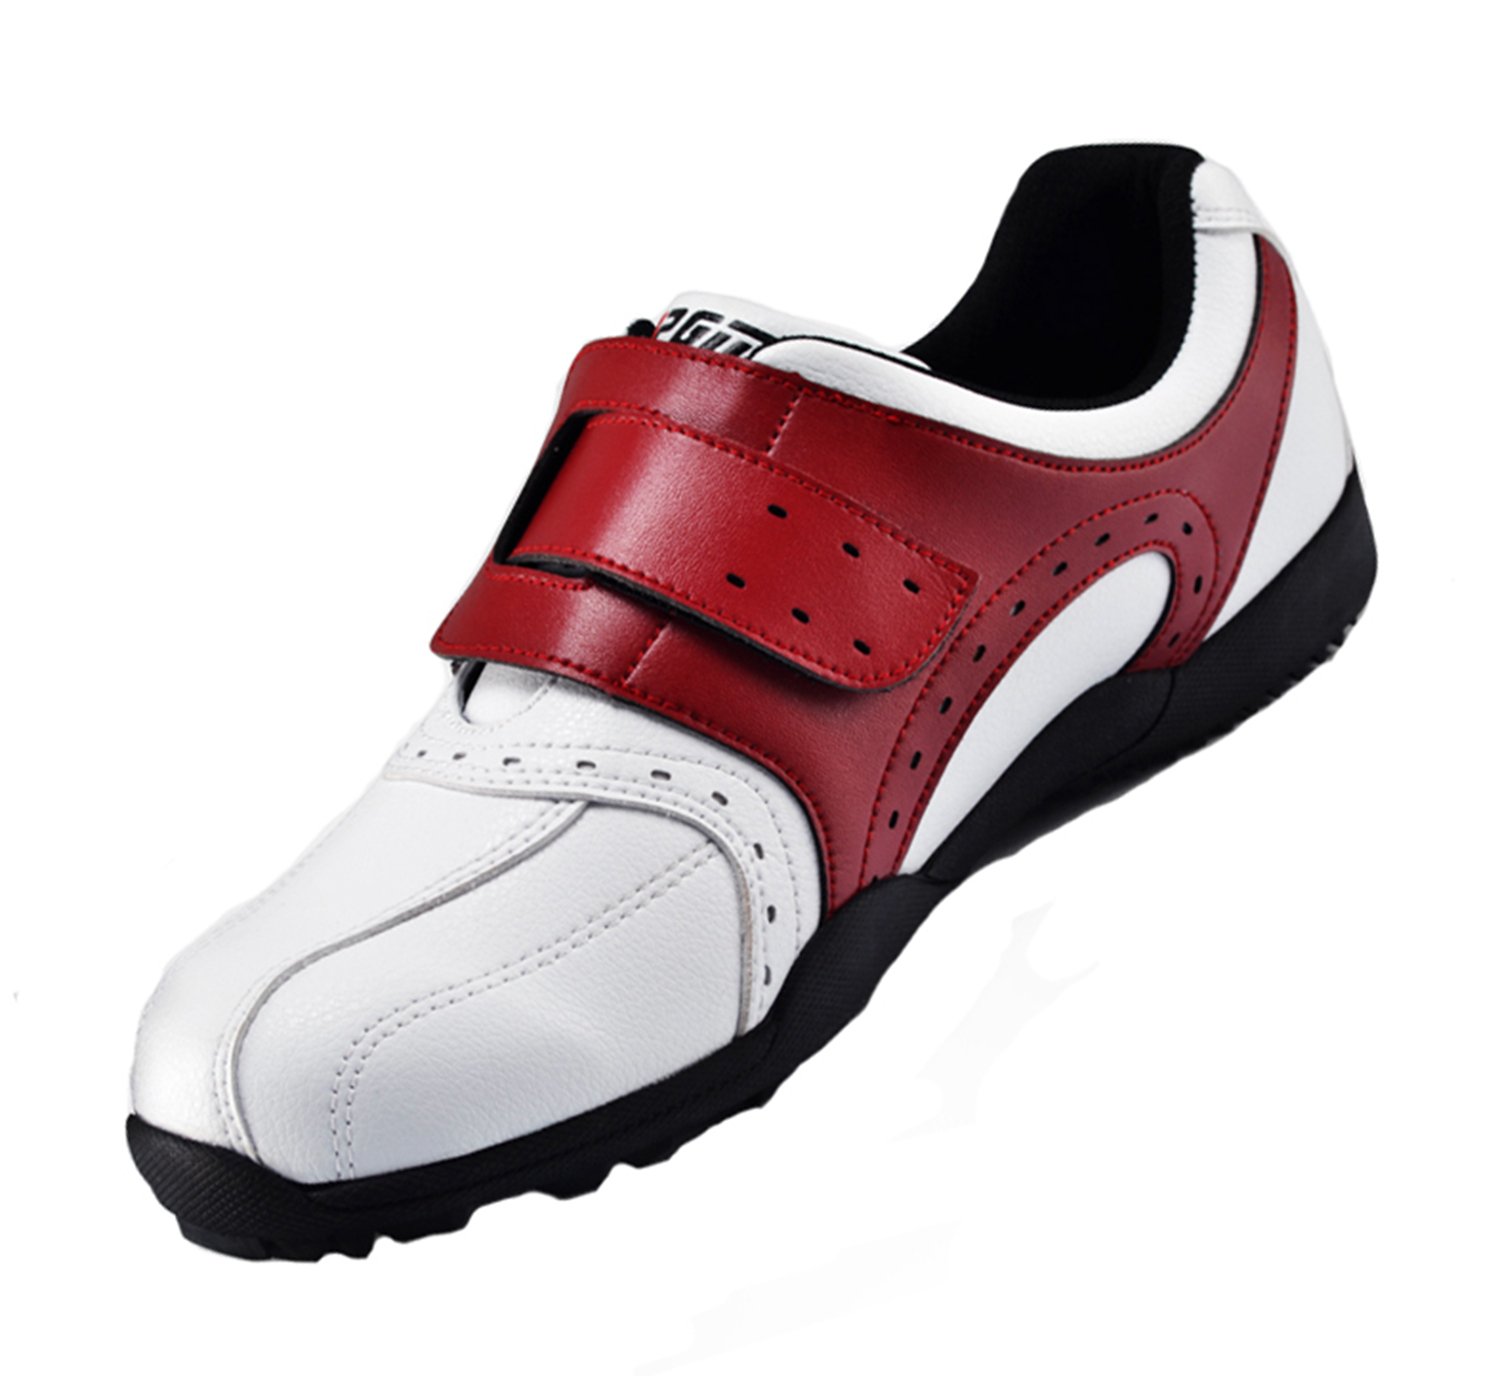 PGM Golf Schuhe Herren Outdoor-atmungsaktive Golfschuhe Laufschuhe Turnschuhe für Männer